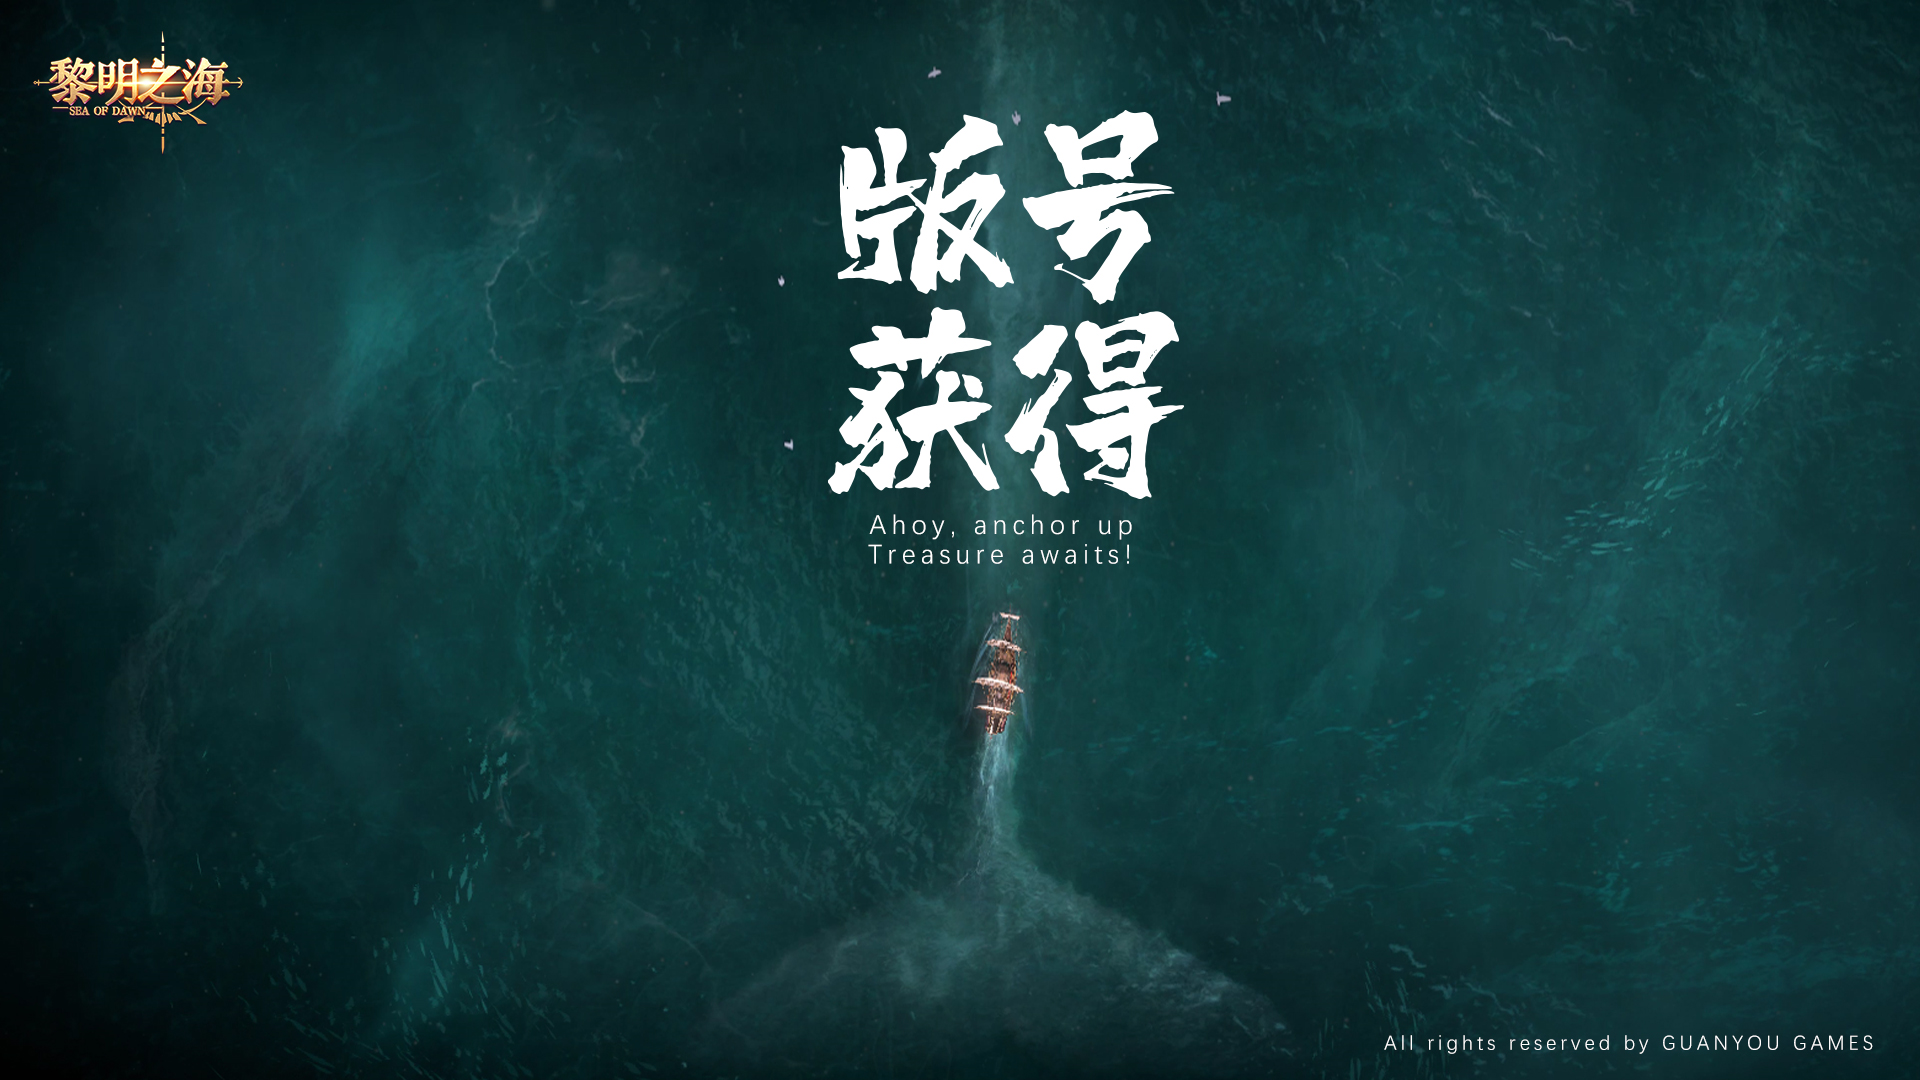 高自由度MMO手游《黎明之海》喜提版号 9月开启大规模测试